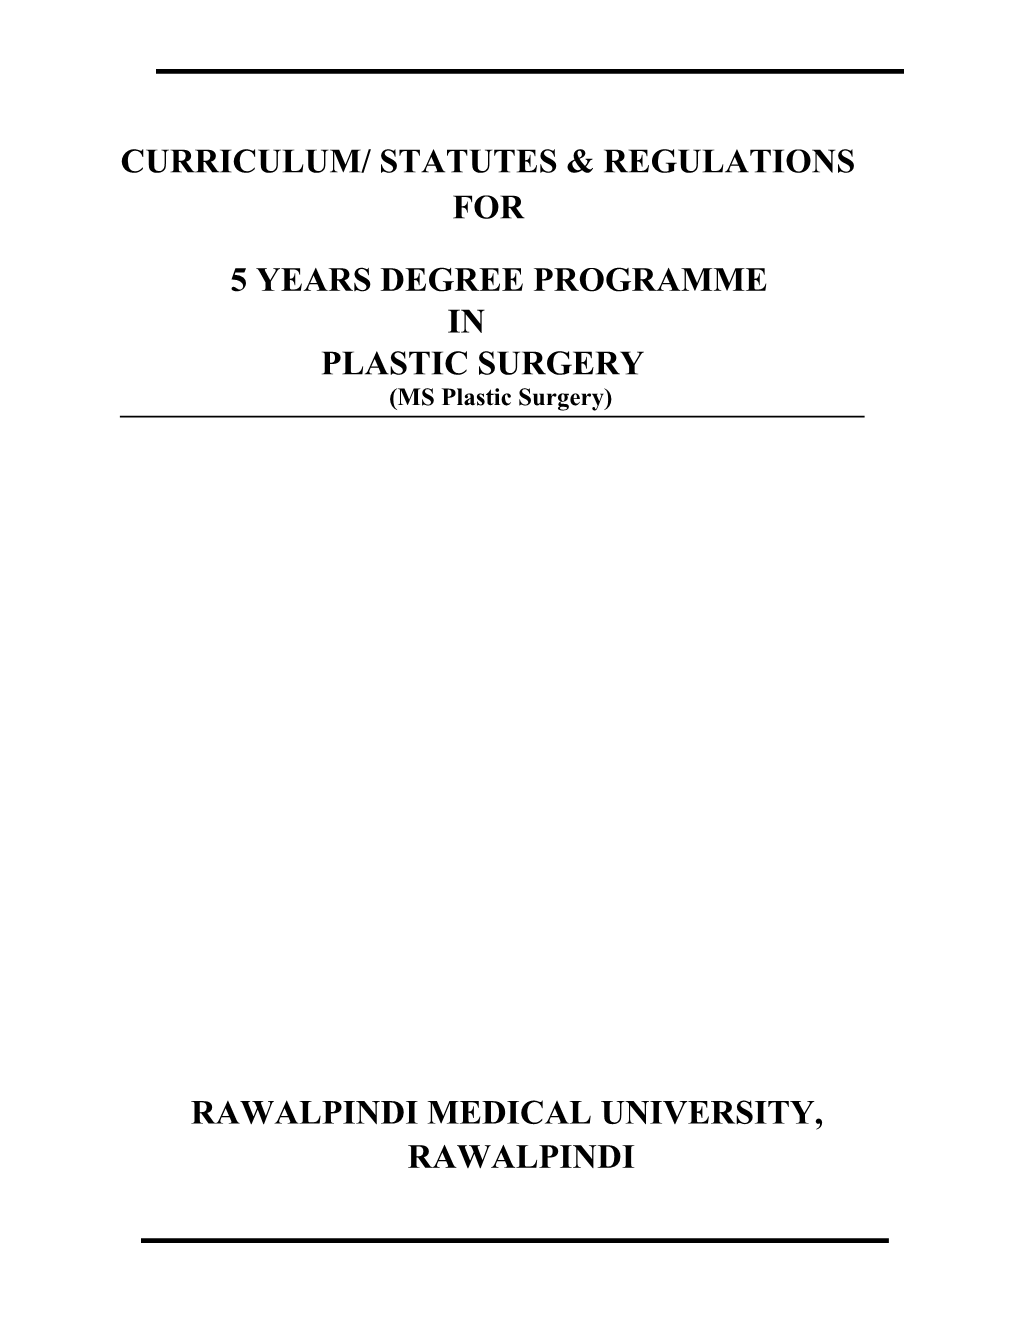 Curriculum/ Statutes & Regulations For